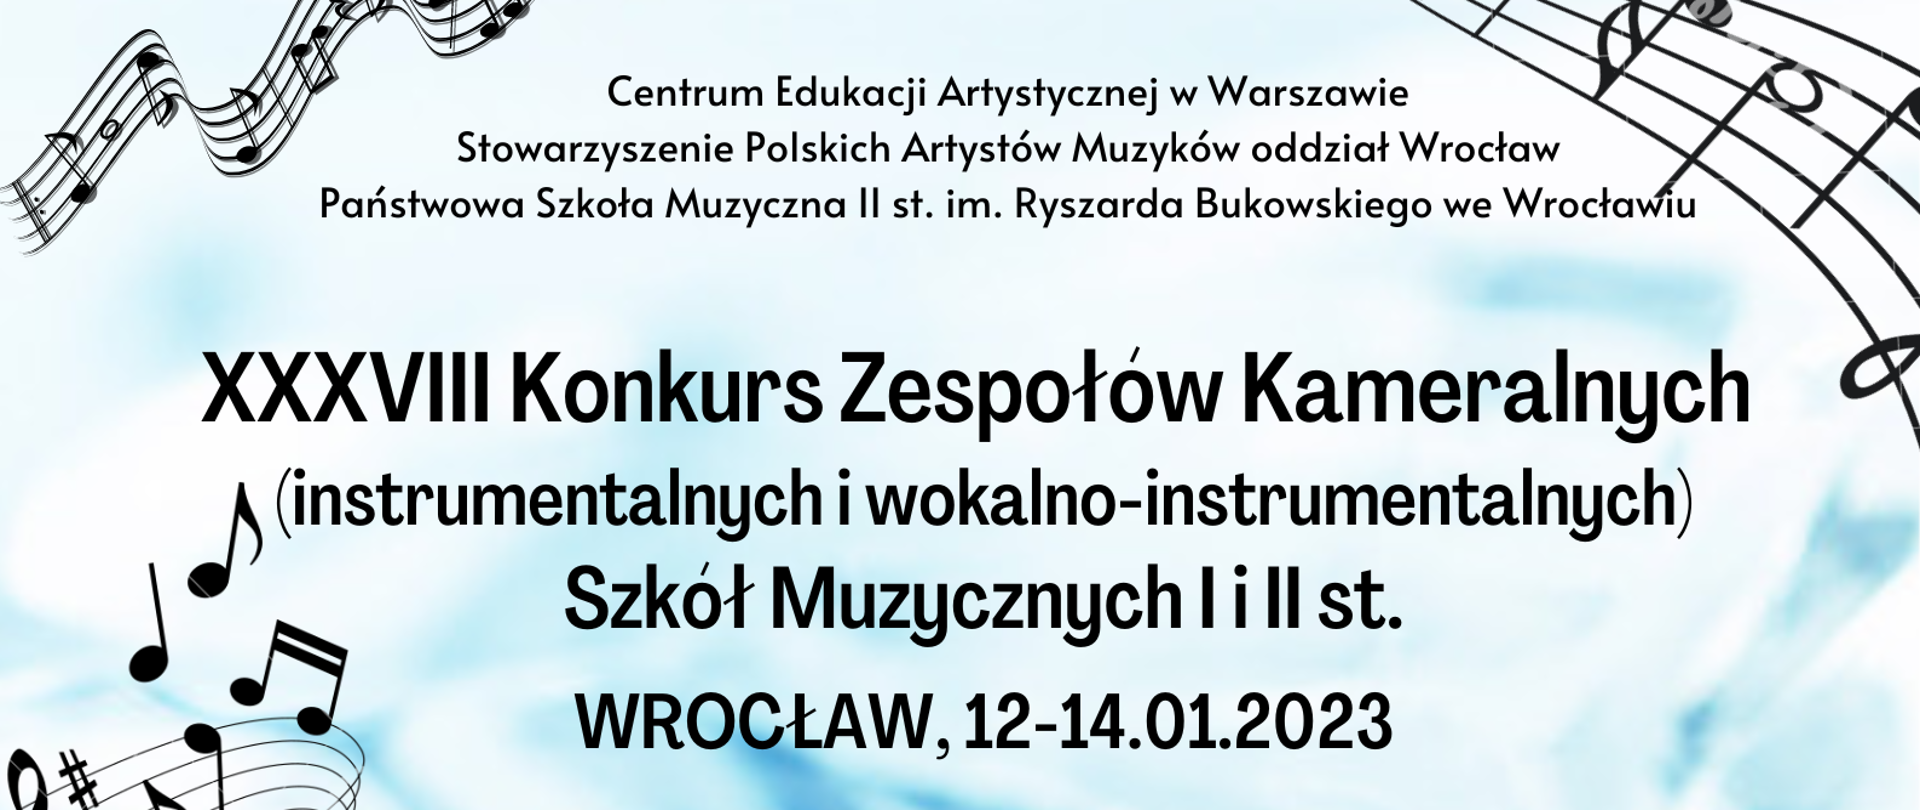 XXXVIII Konkurs Zespołów Kameralnych Szkół Muzycznych I i II st. - 12-14.01.2023